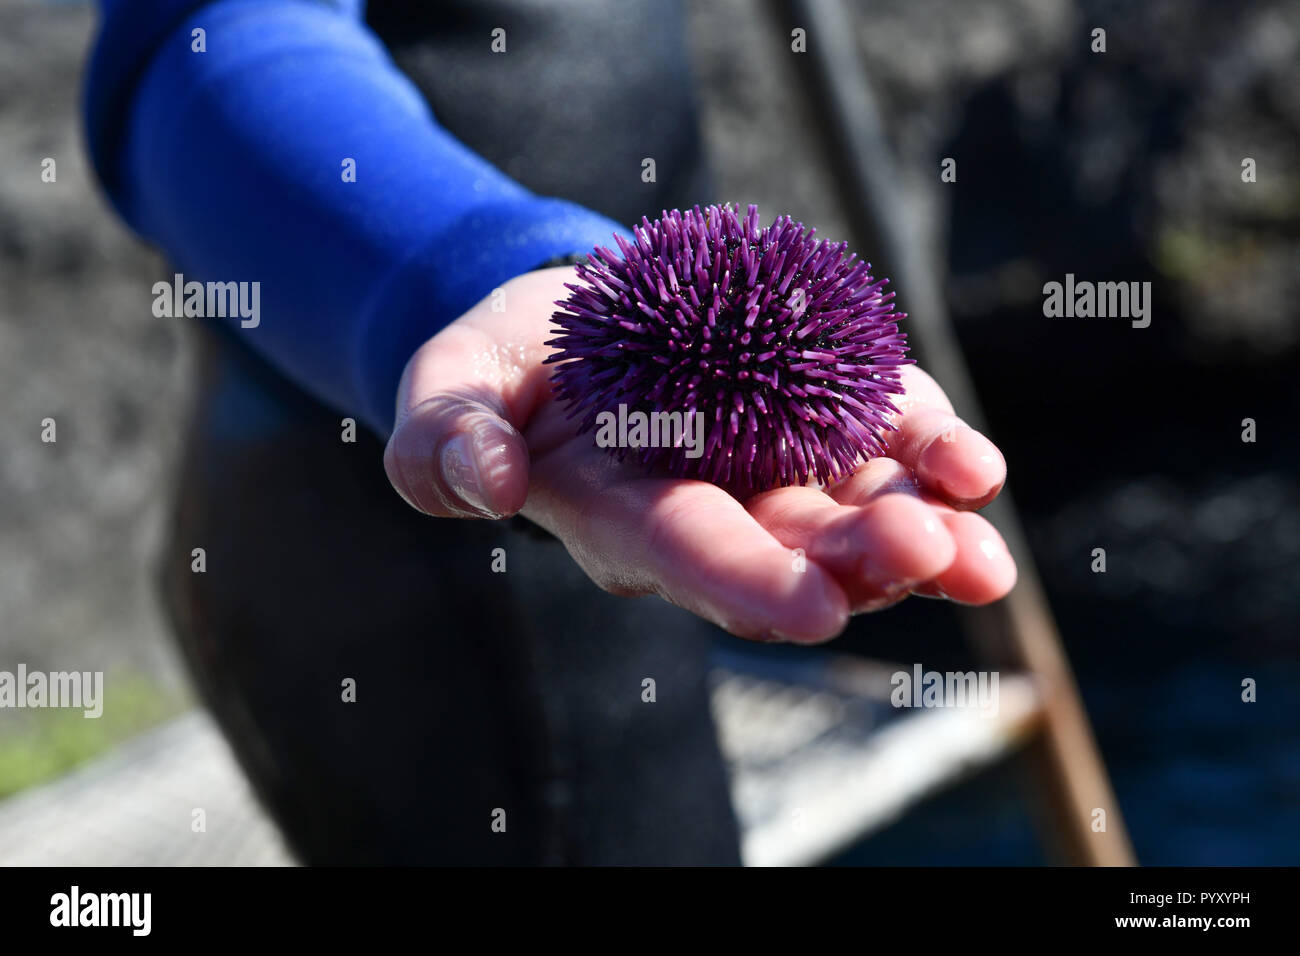 Spanien, Kanarische Inseln: Teneriffa. Purple sea urchin (Sphaerechinus granularis) in der Hand eines Jugendlichen das Tragen von Neoprenanzug. Veröffentlichung rechte OK *** L Stockfoto